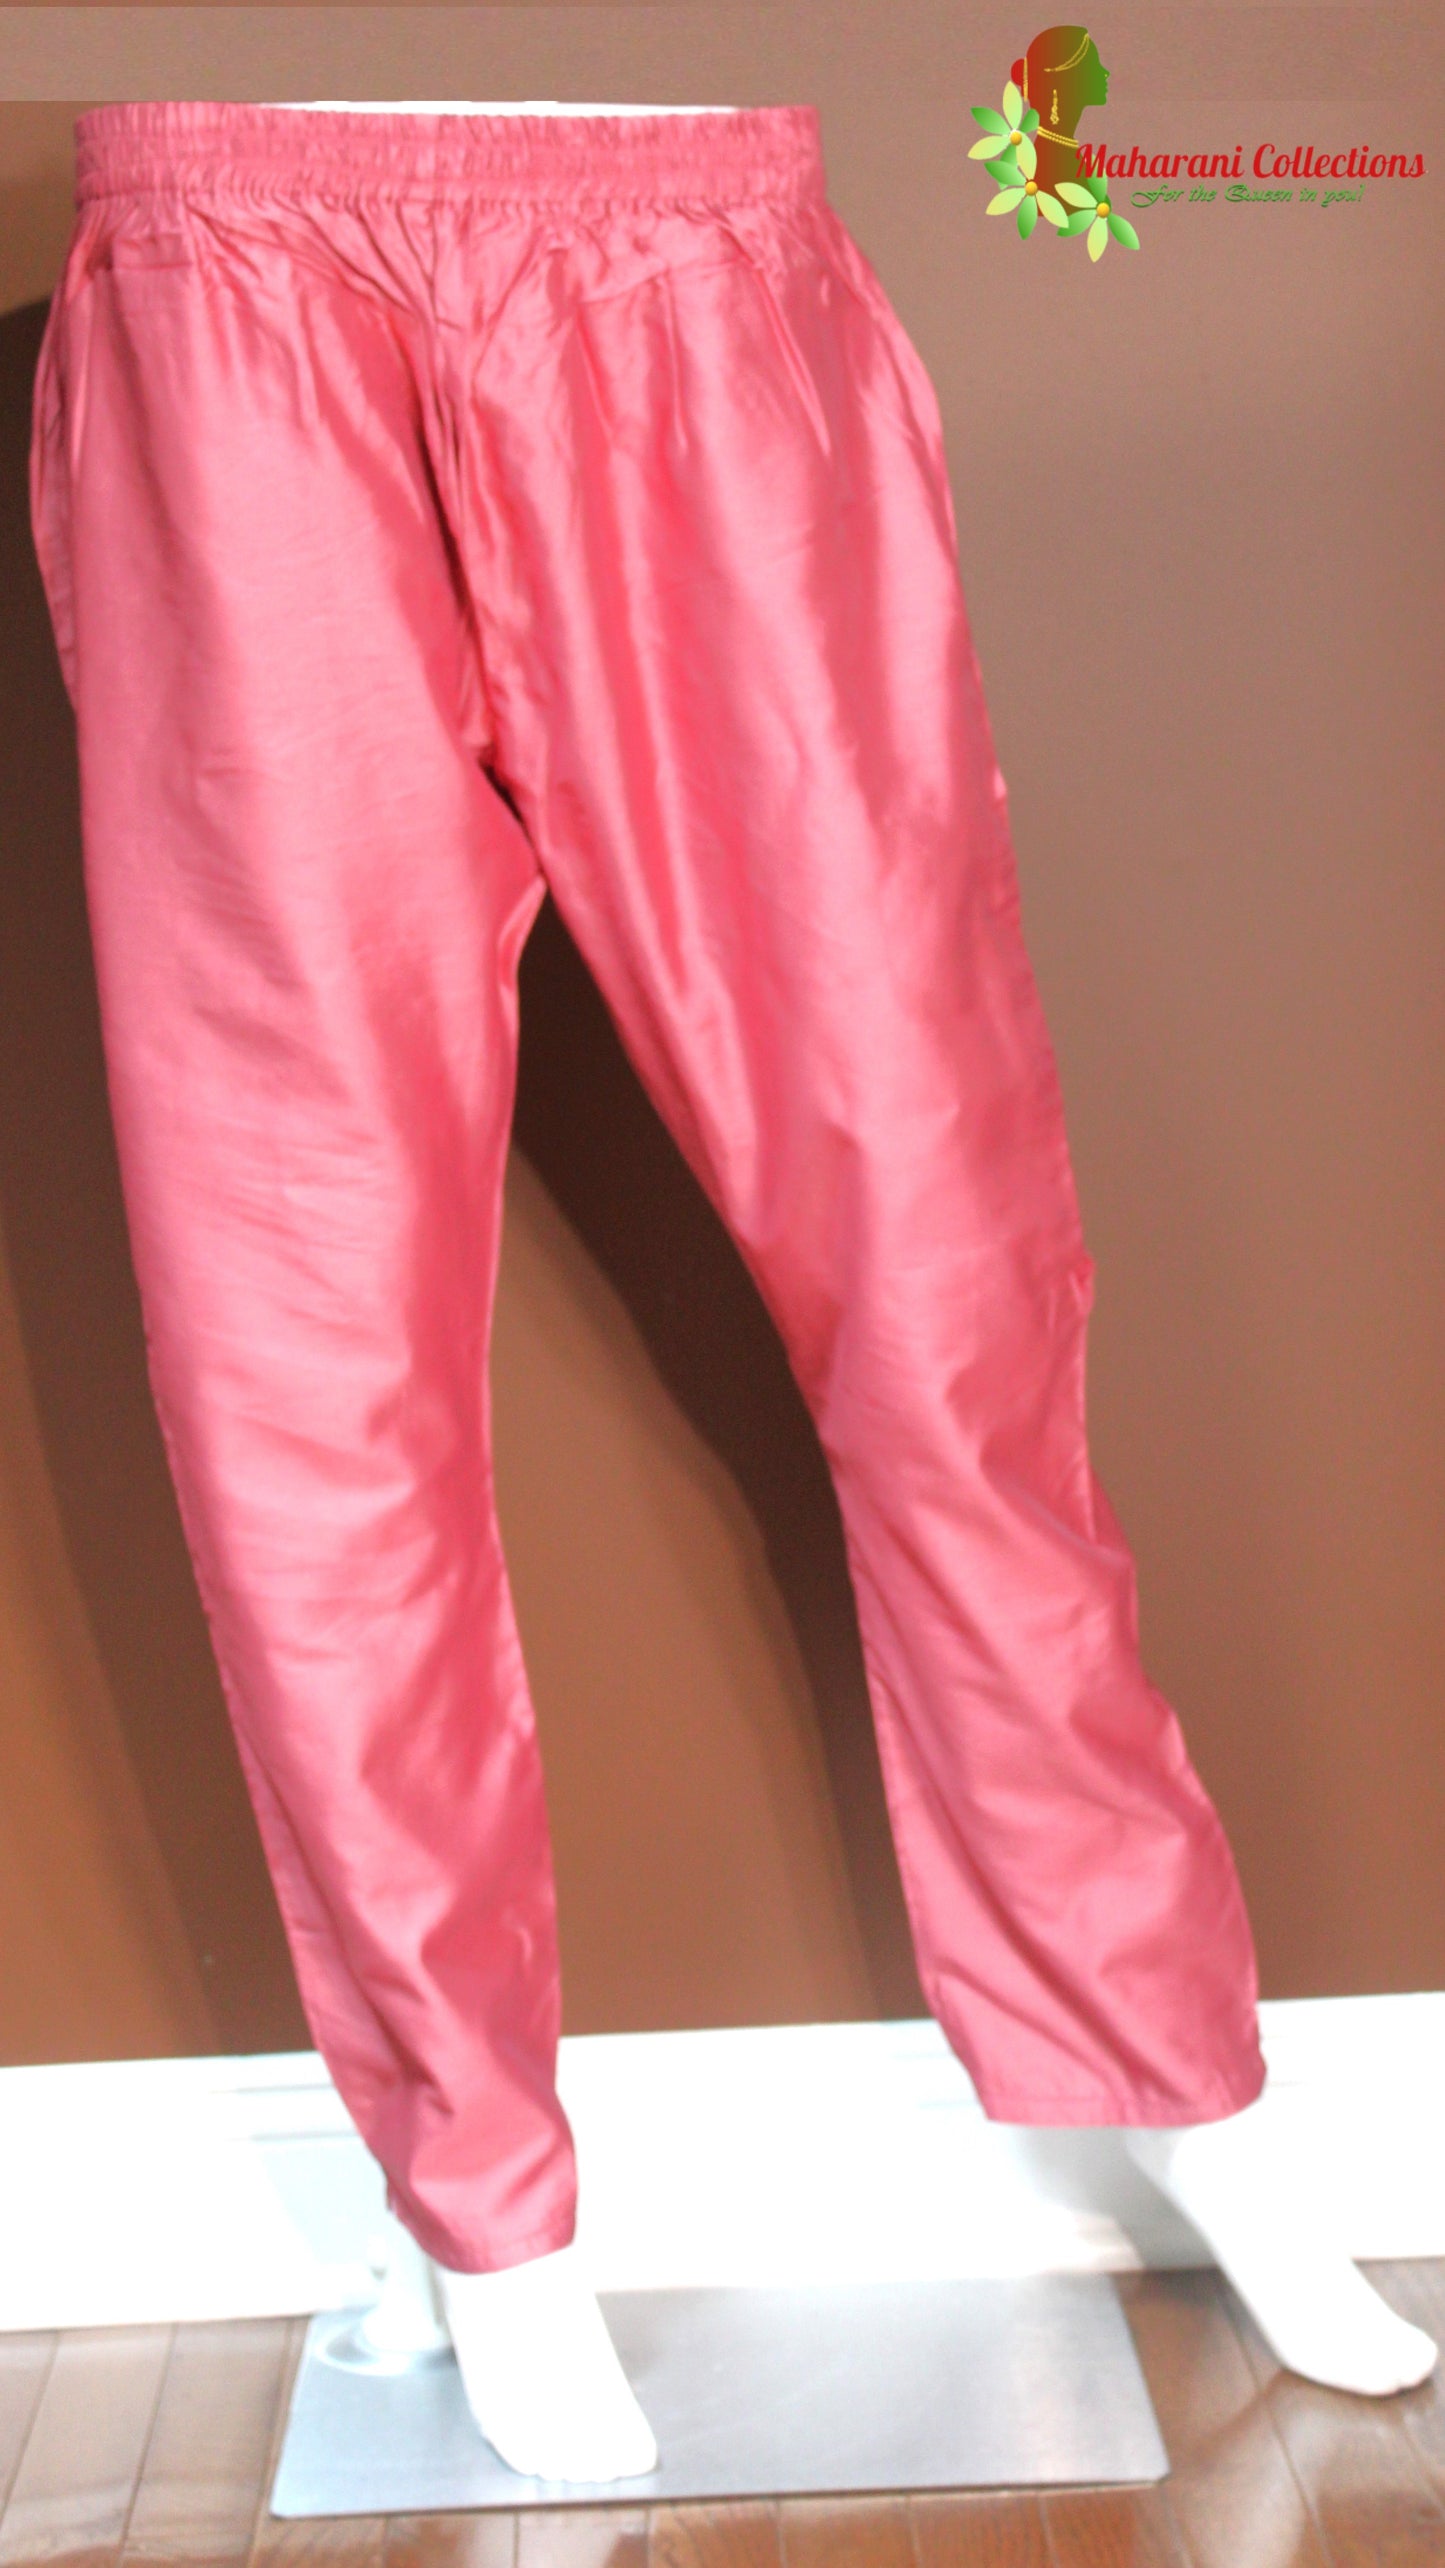 Maharani's Pant Suit - Georgette - Magenta (S, M, L, XL)